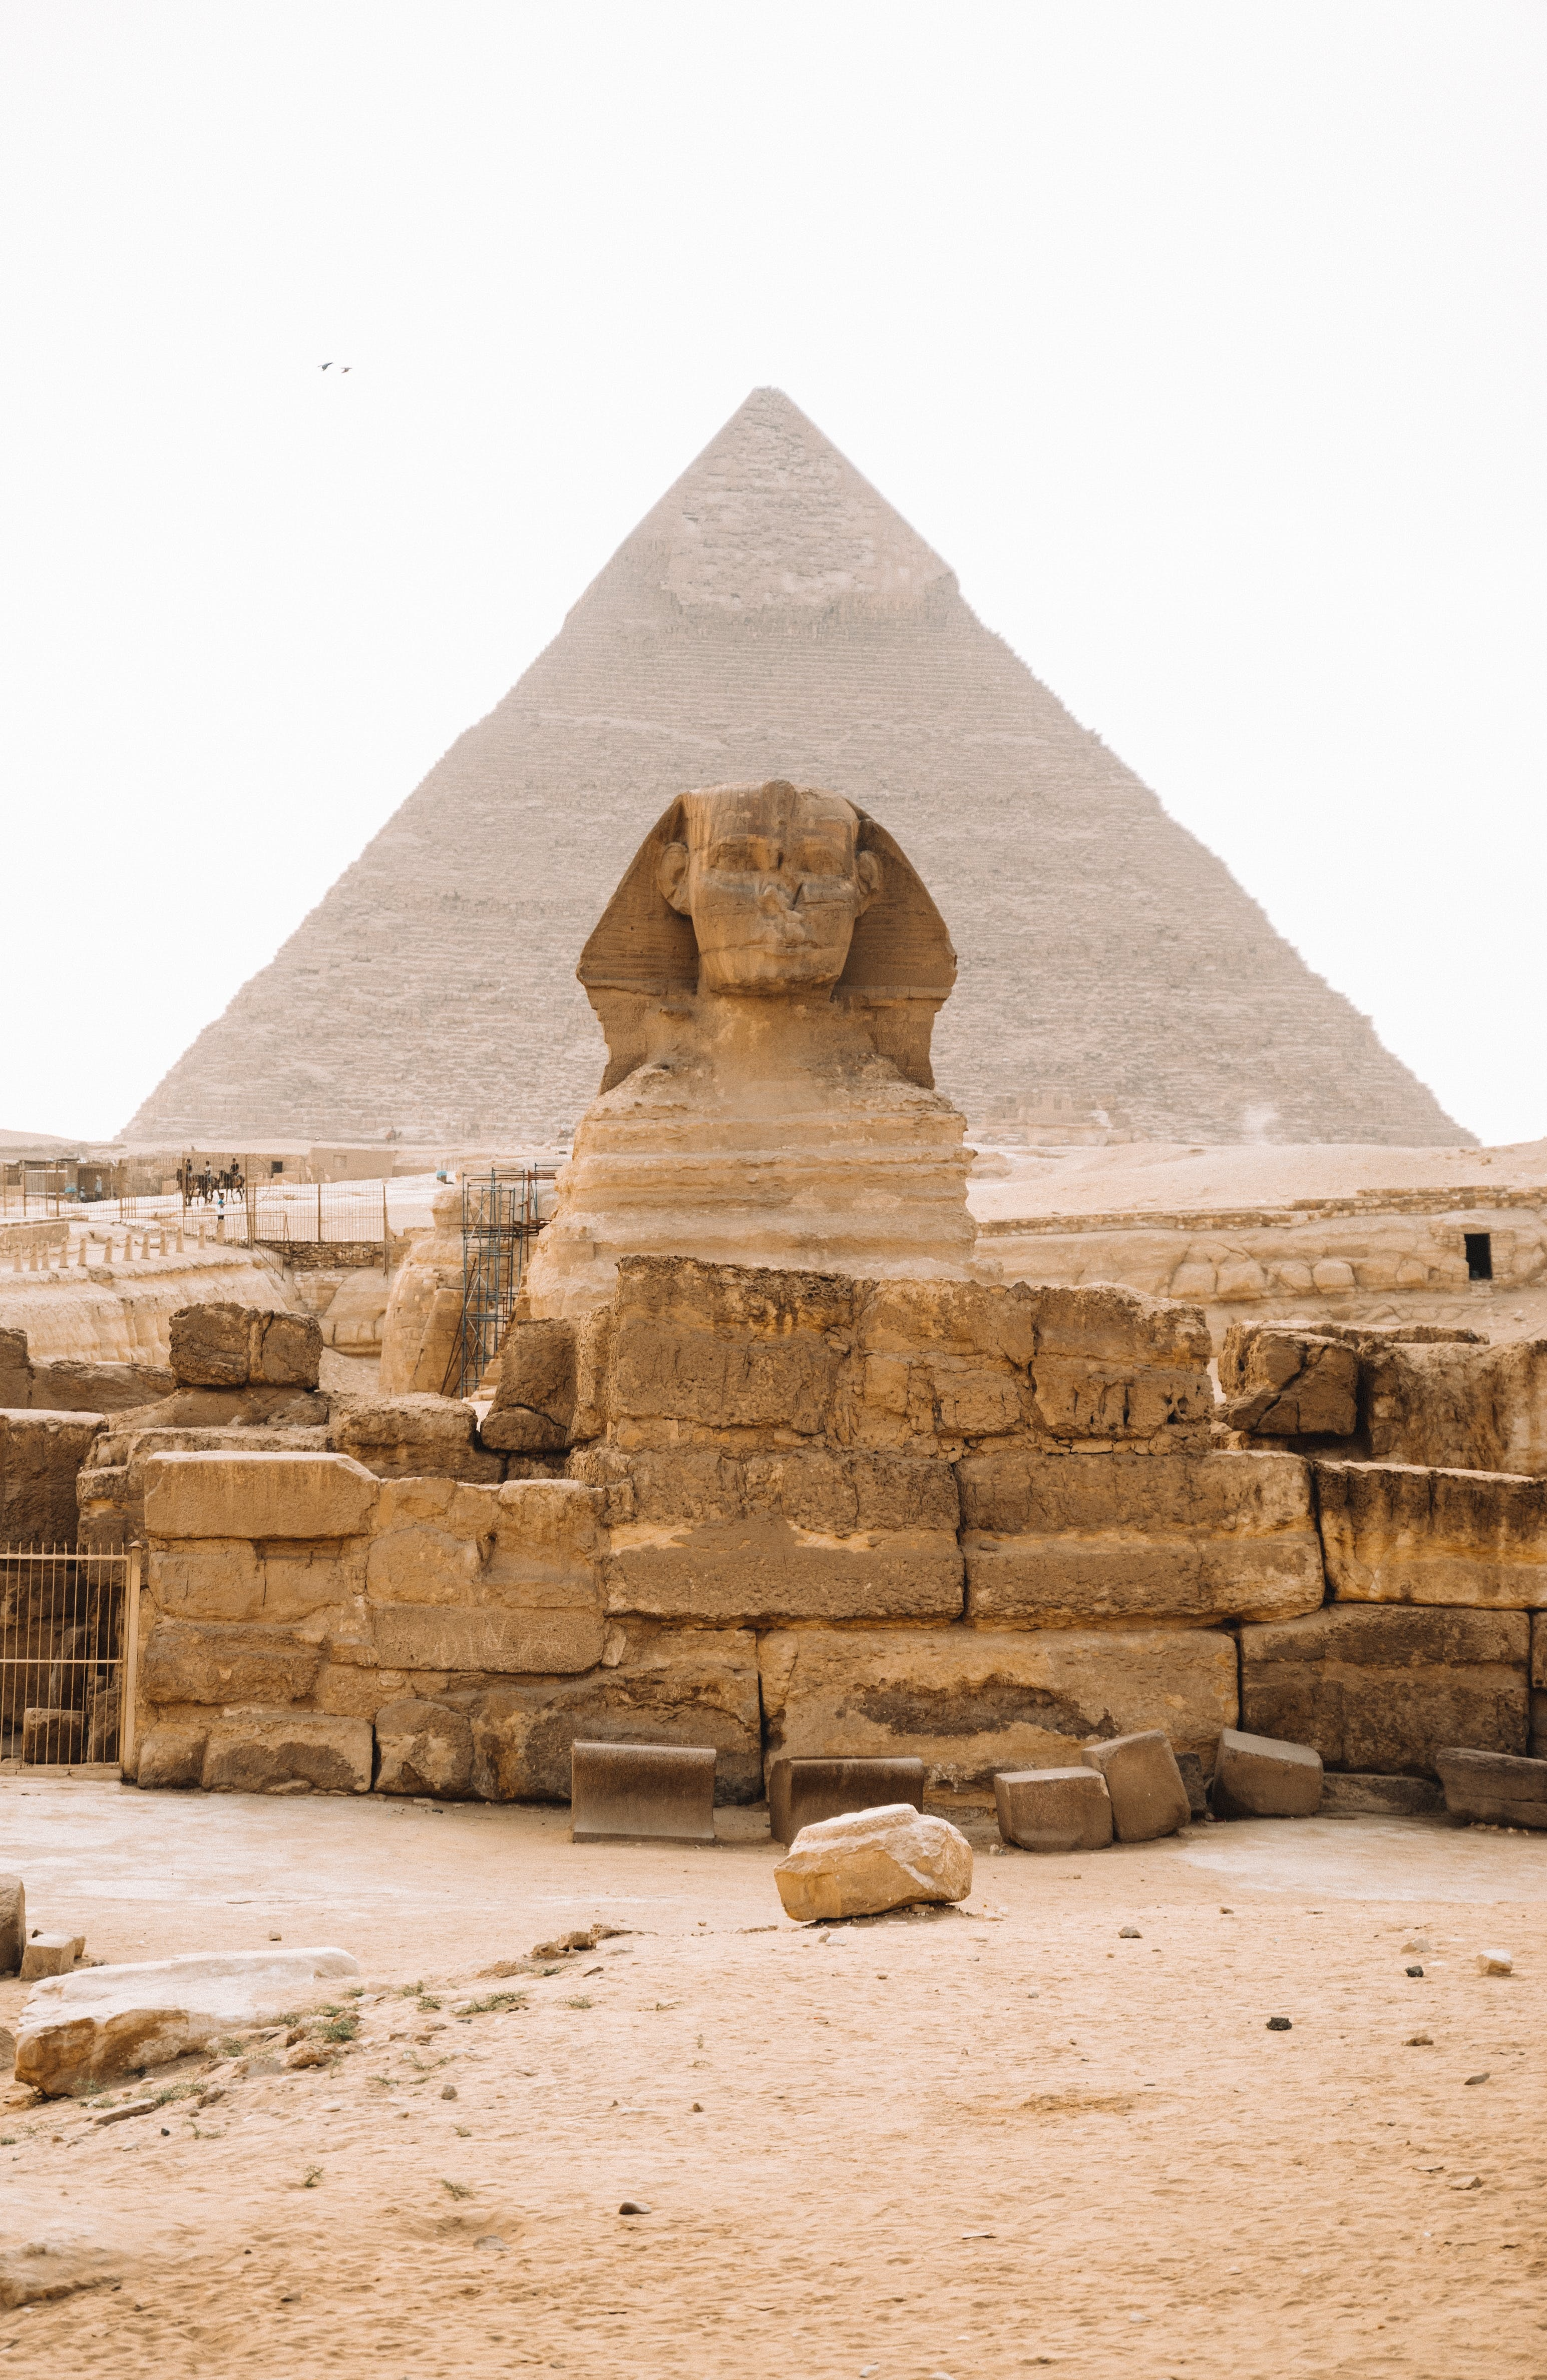 De Sfinx is bijna volledig bewaard gebleven